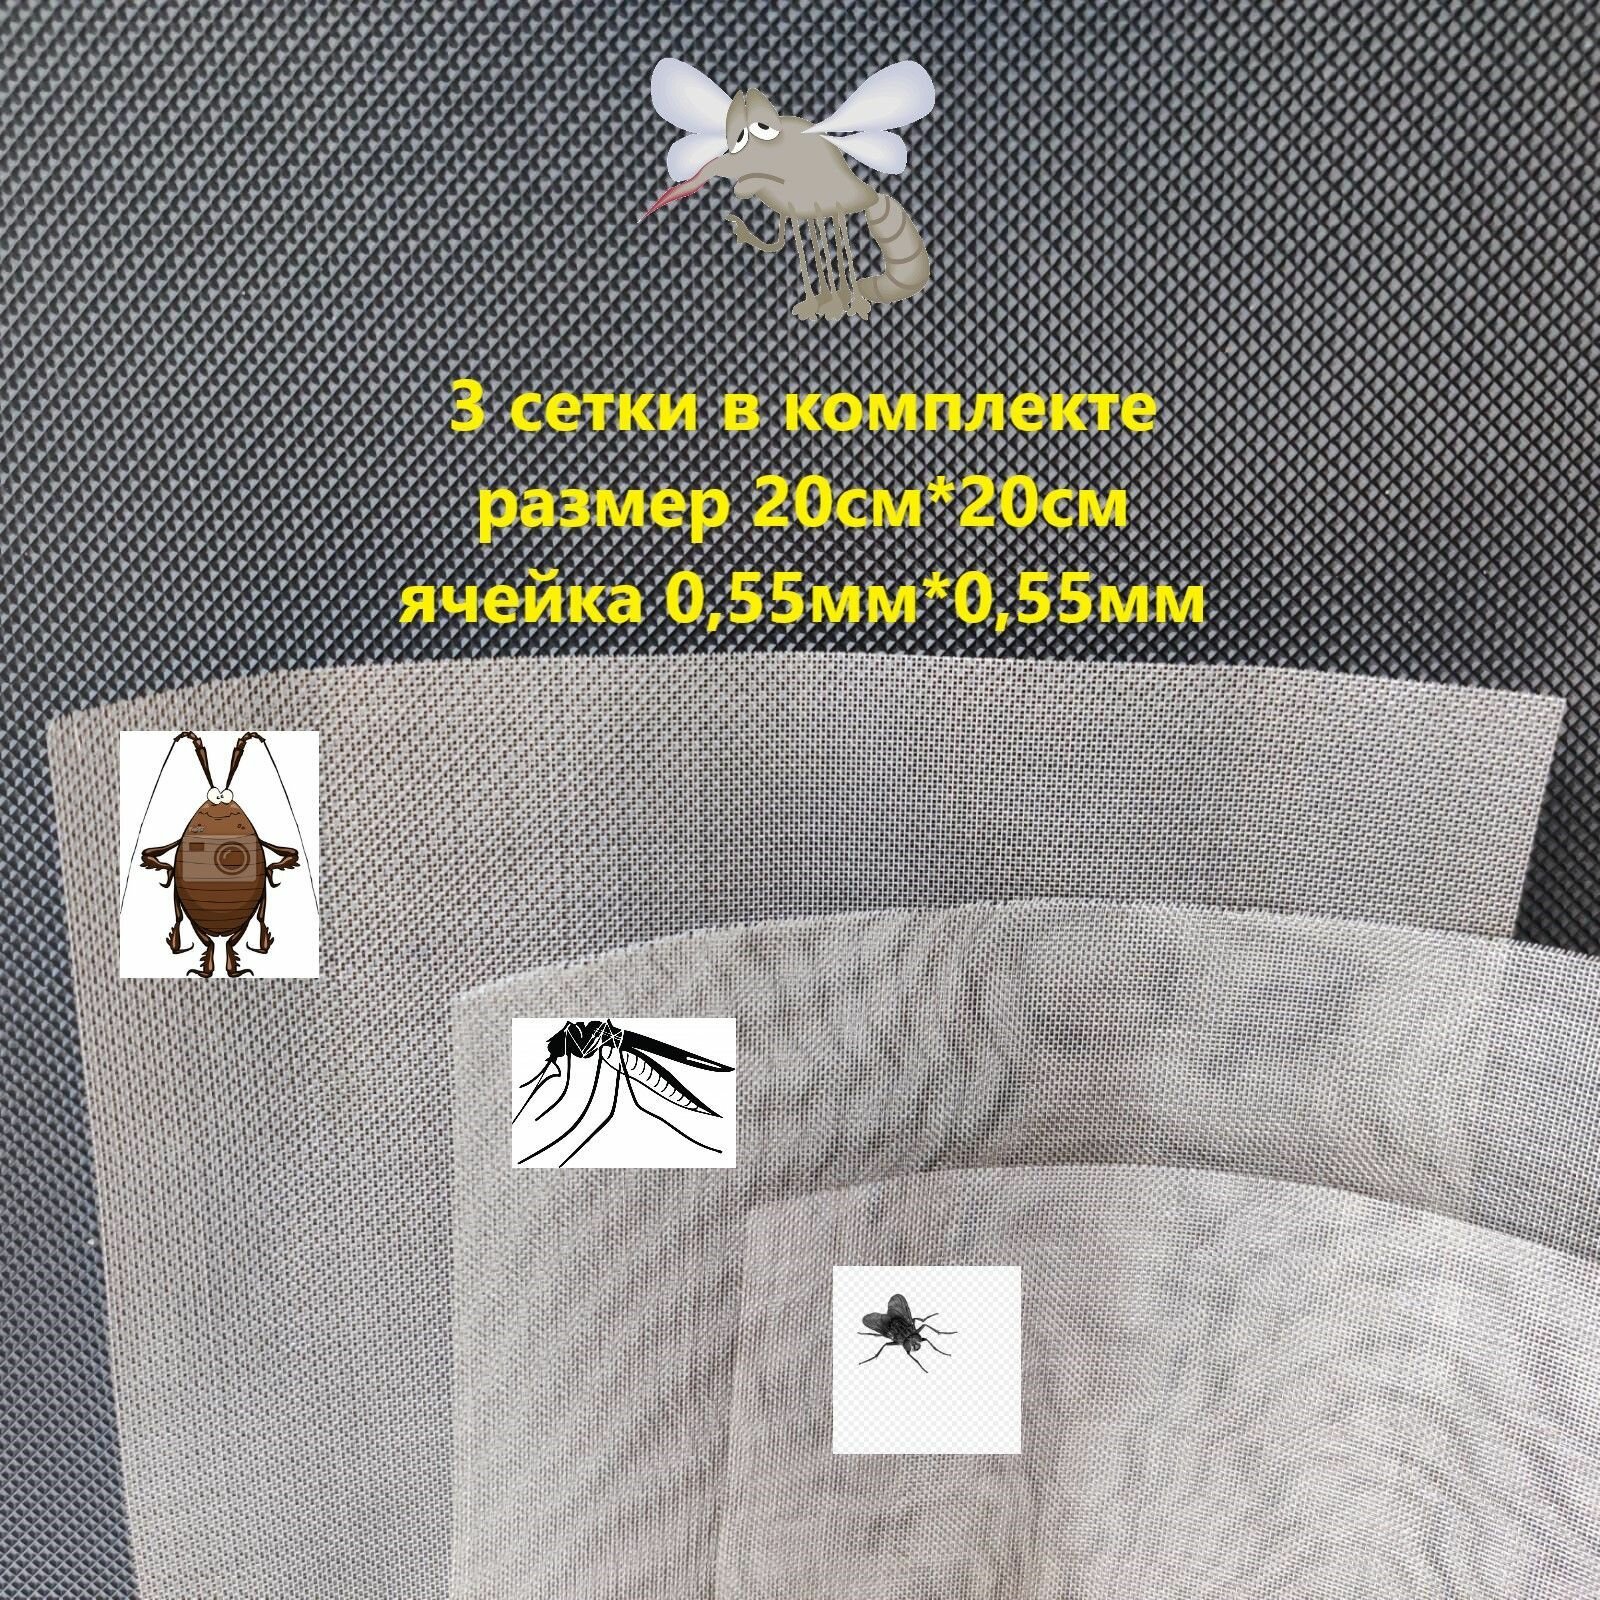 Сетка для вентиляционных систем от насекомых, клопов, тараканов, комаров, размер 20см*20см, ячейка 0.55мм*0.55мм.